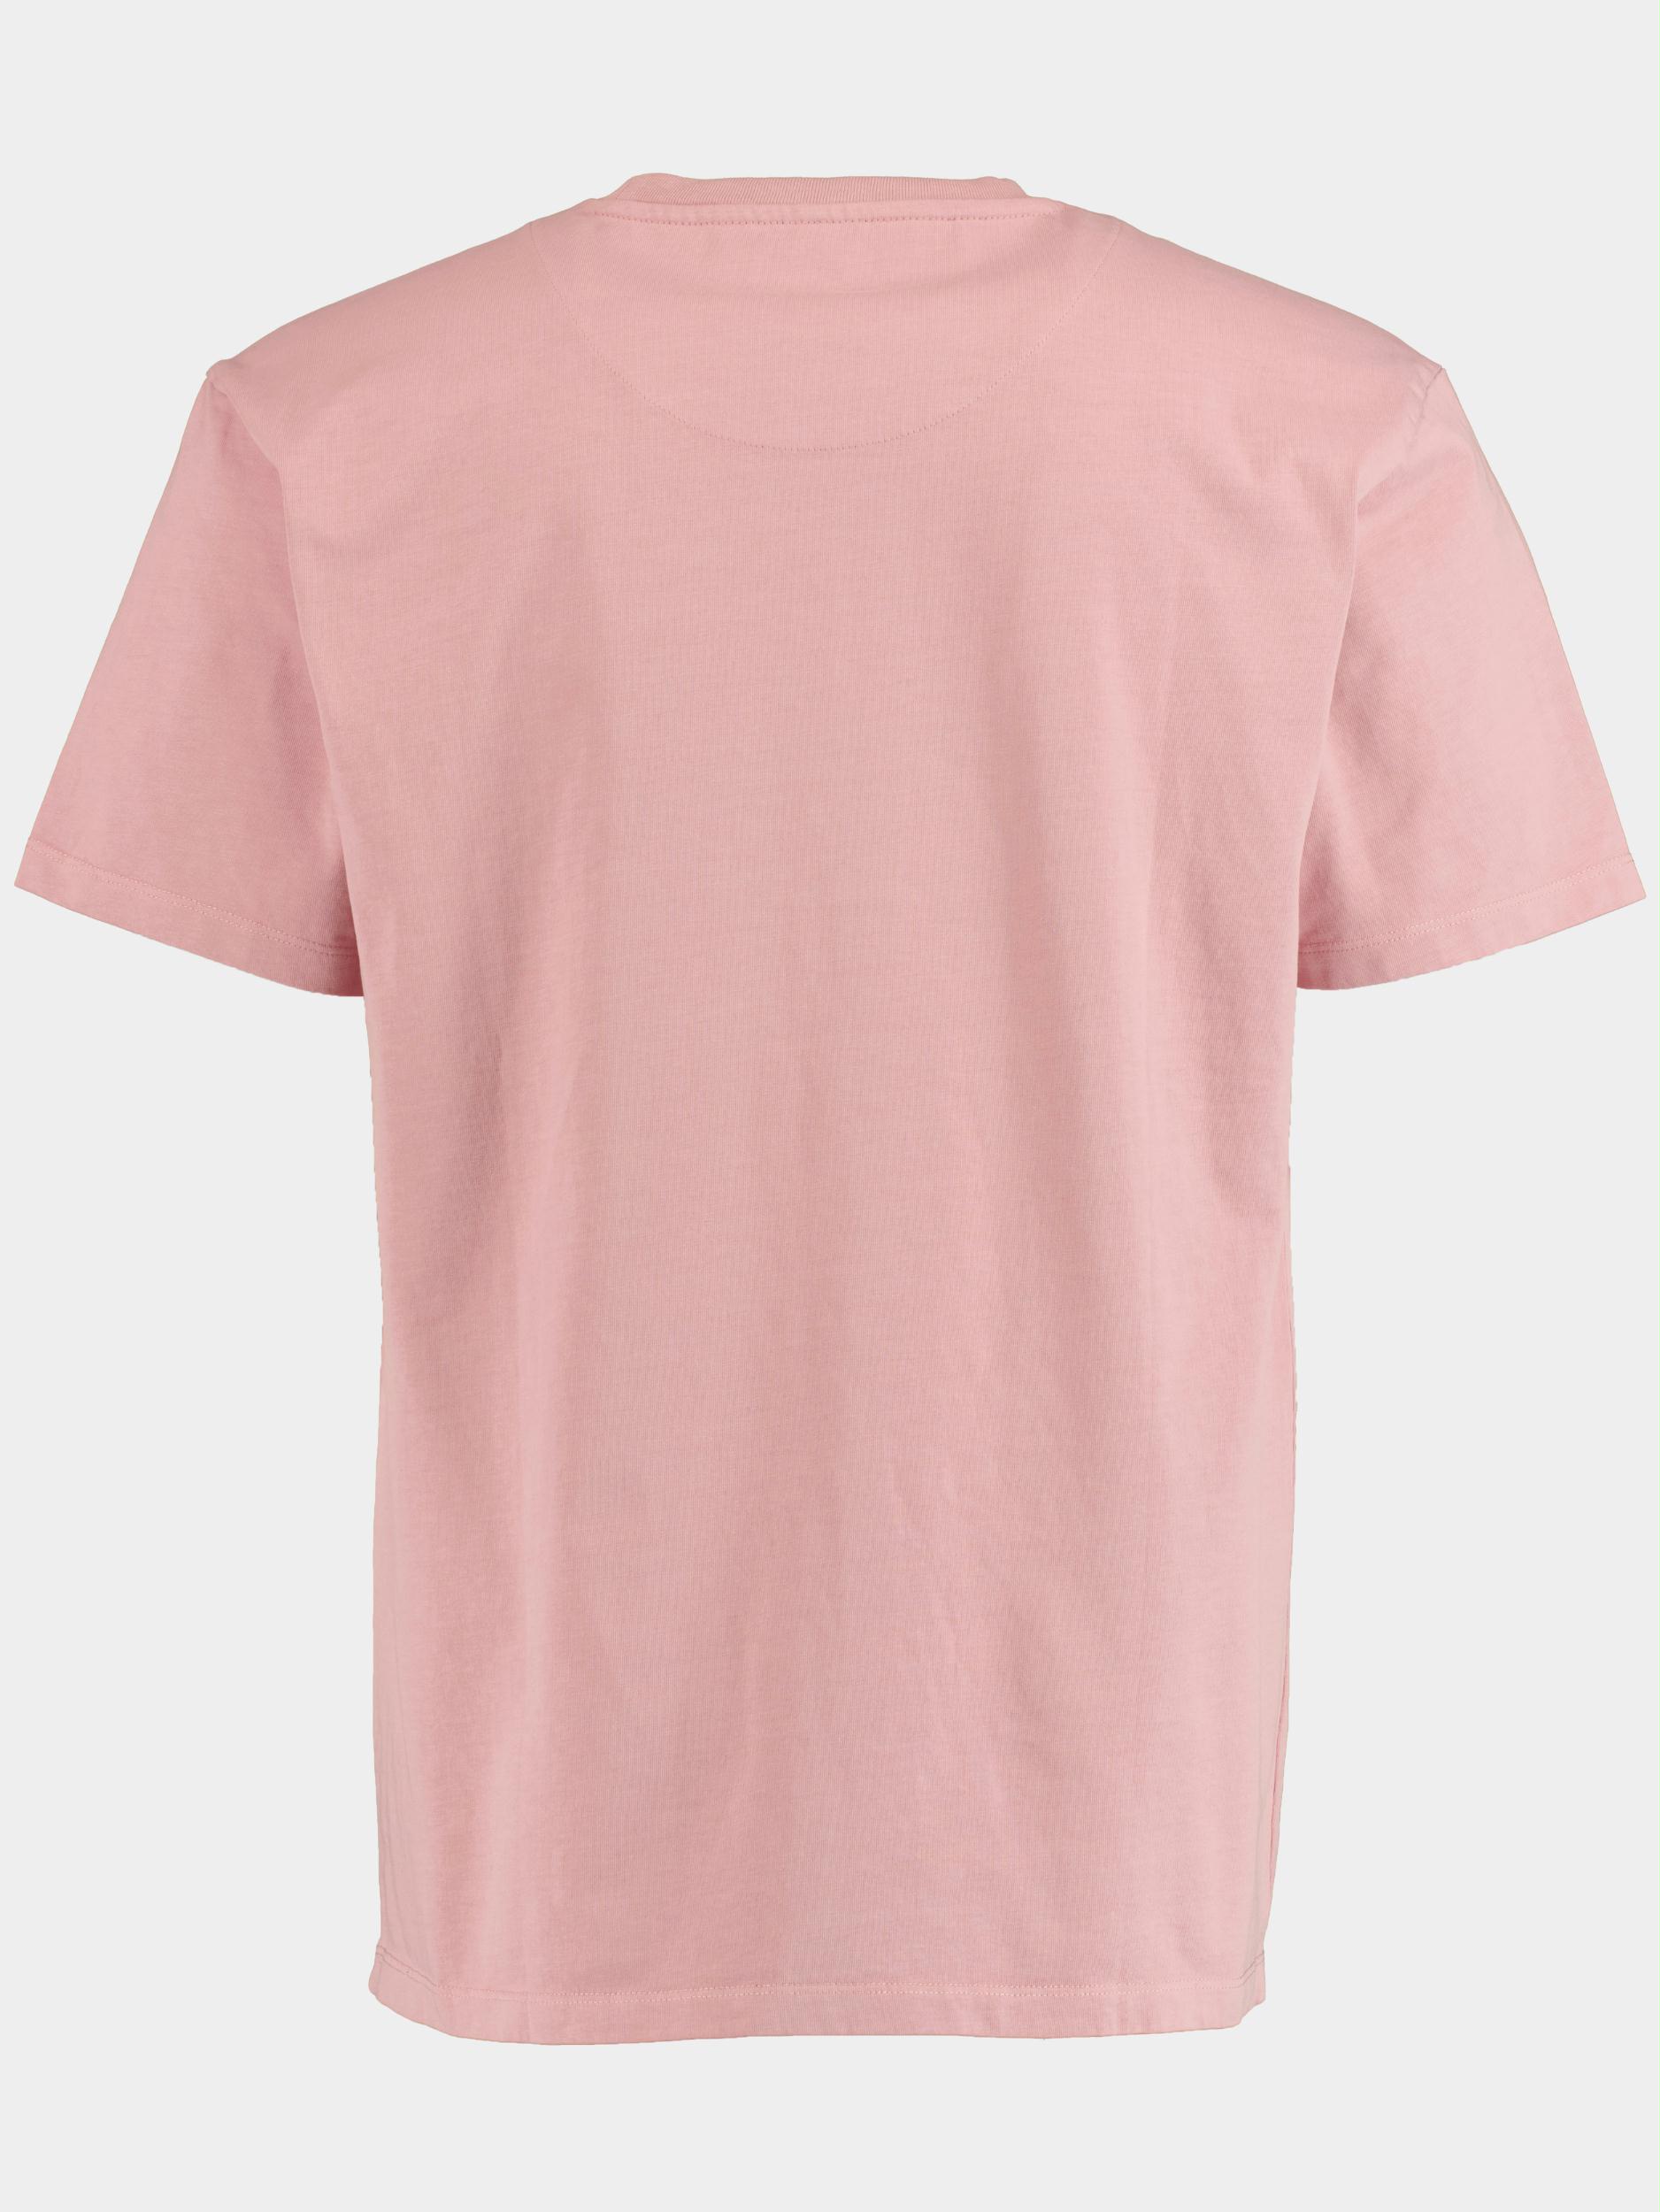 Cars Jeans T-shirt korte mouw Roze Marcetti 66782/62